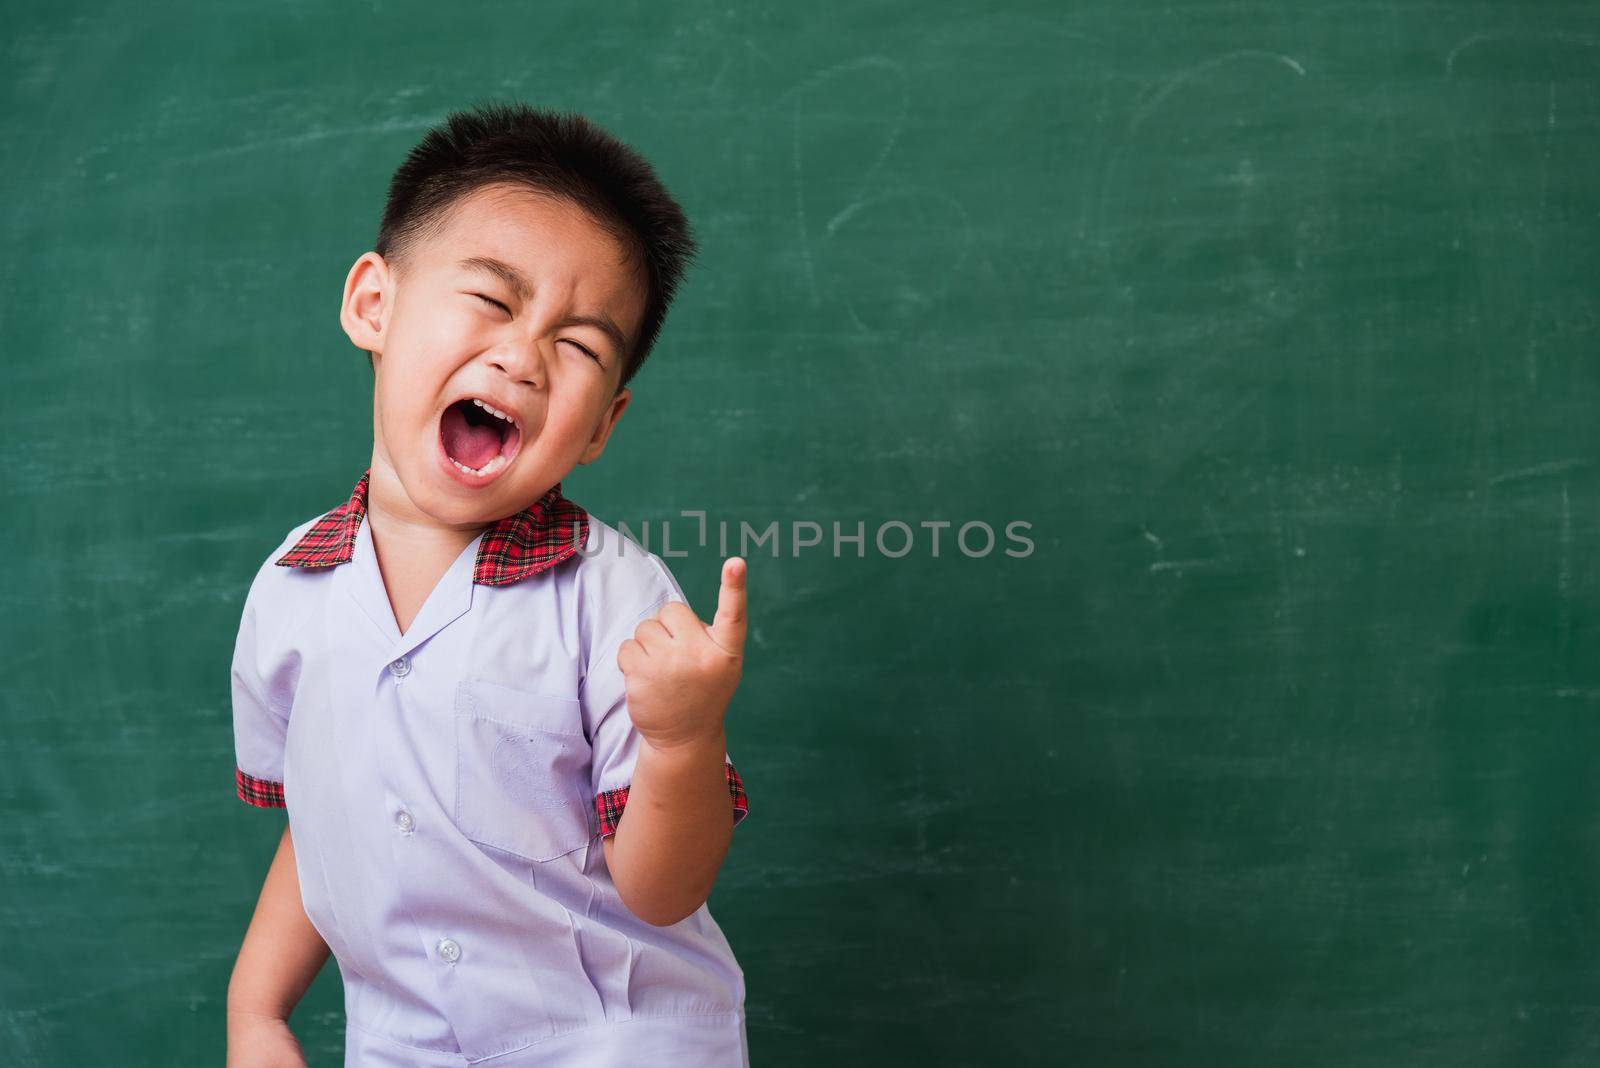 child from kindergarten in student uniform smiling on green school blackboard by Sorapop